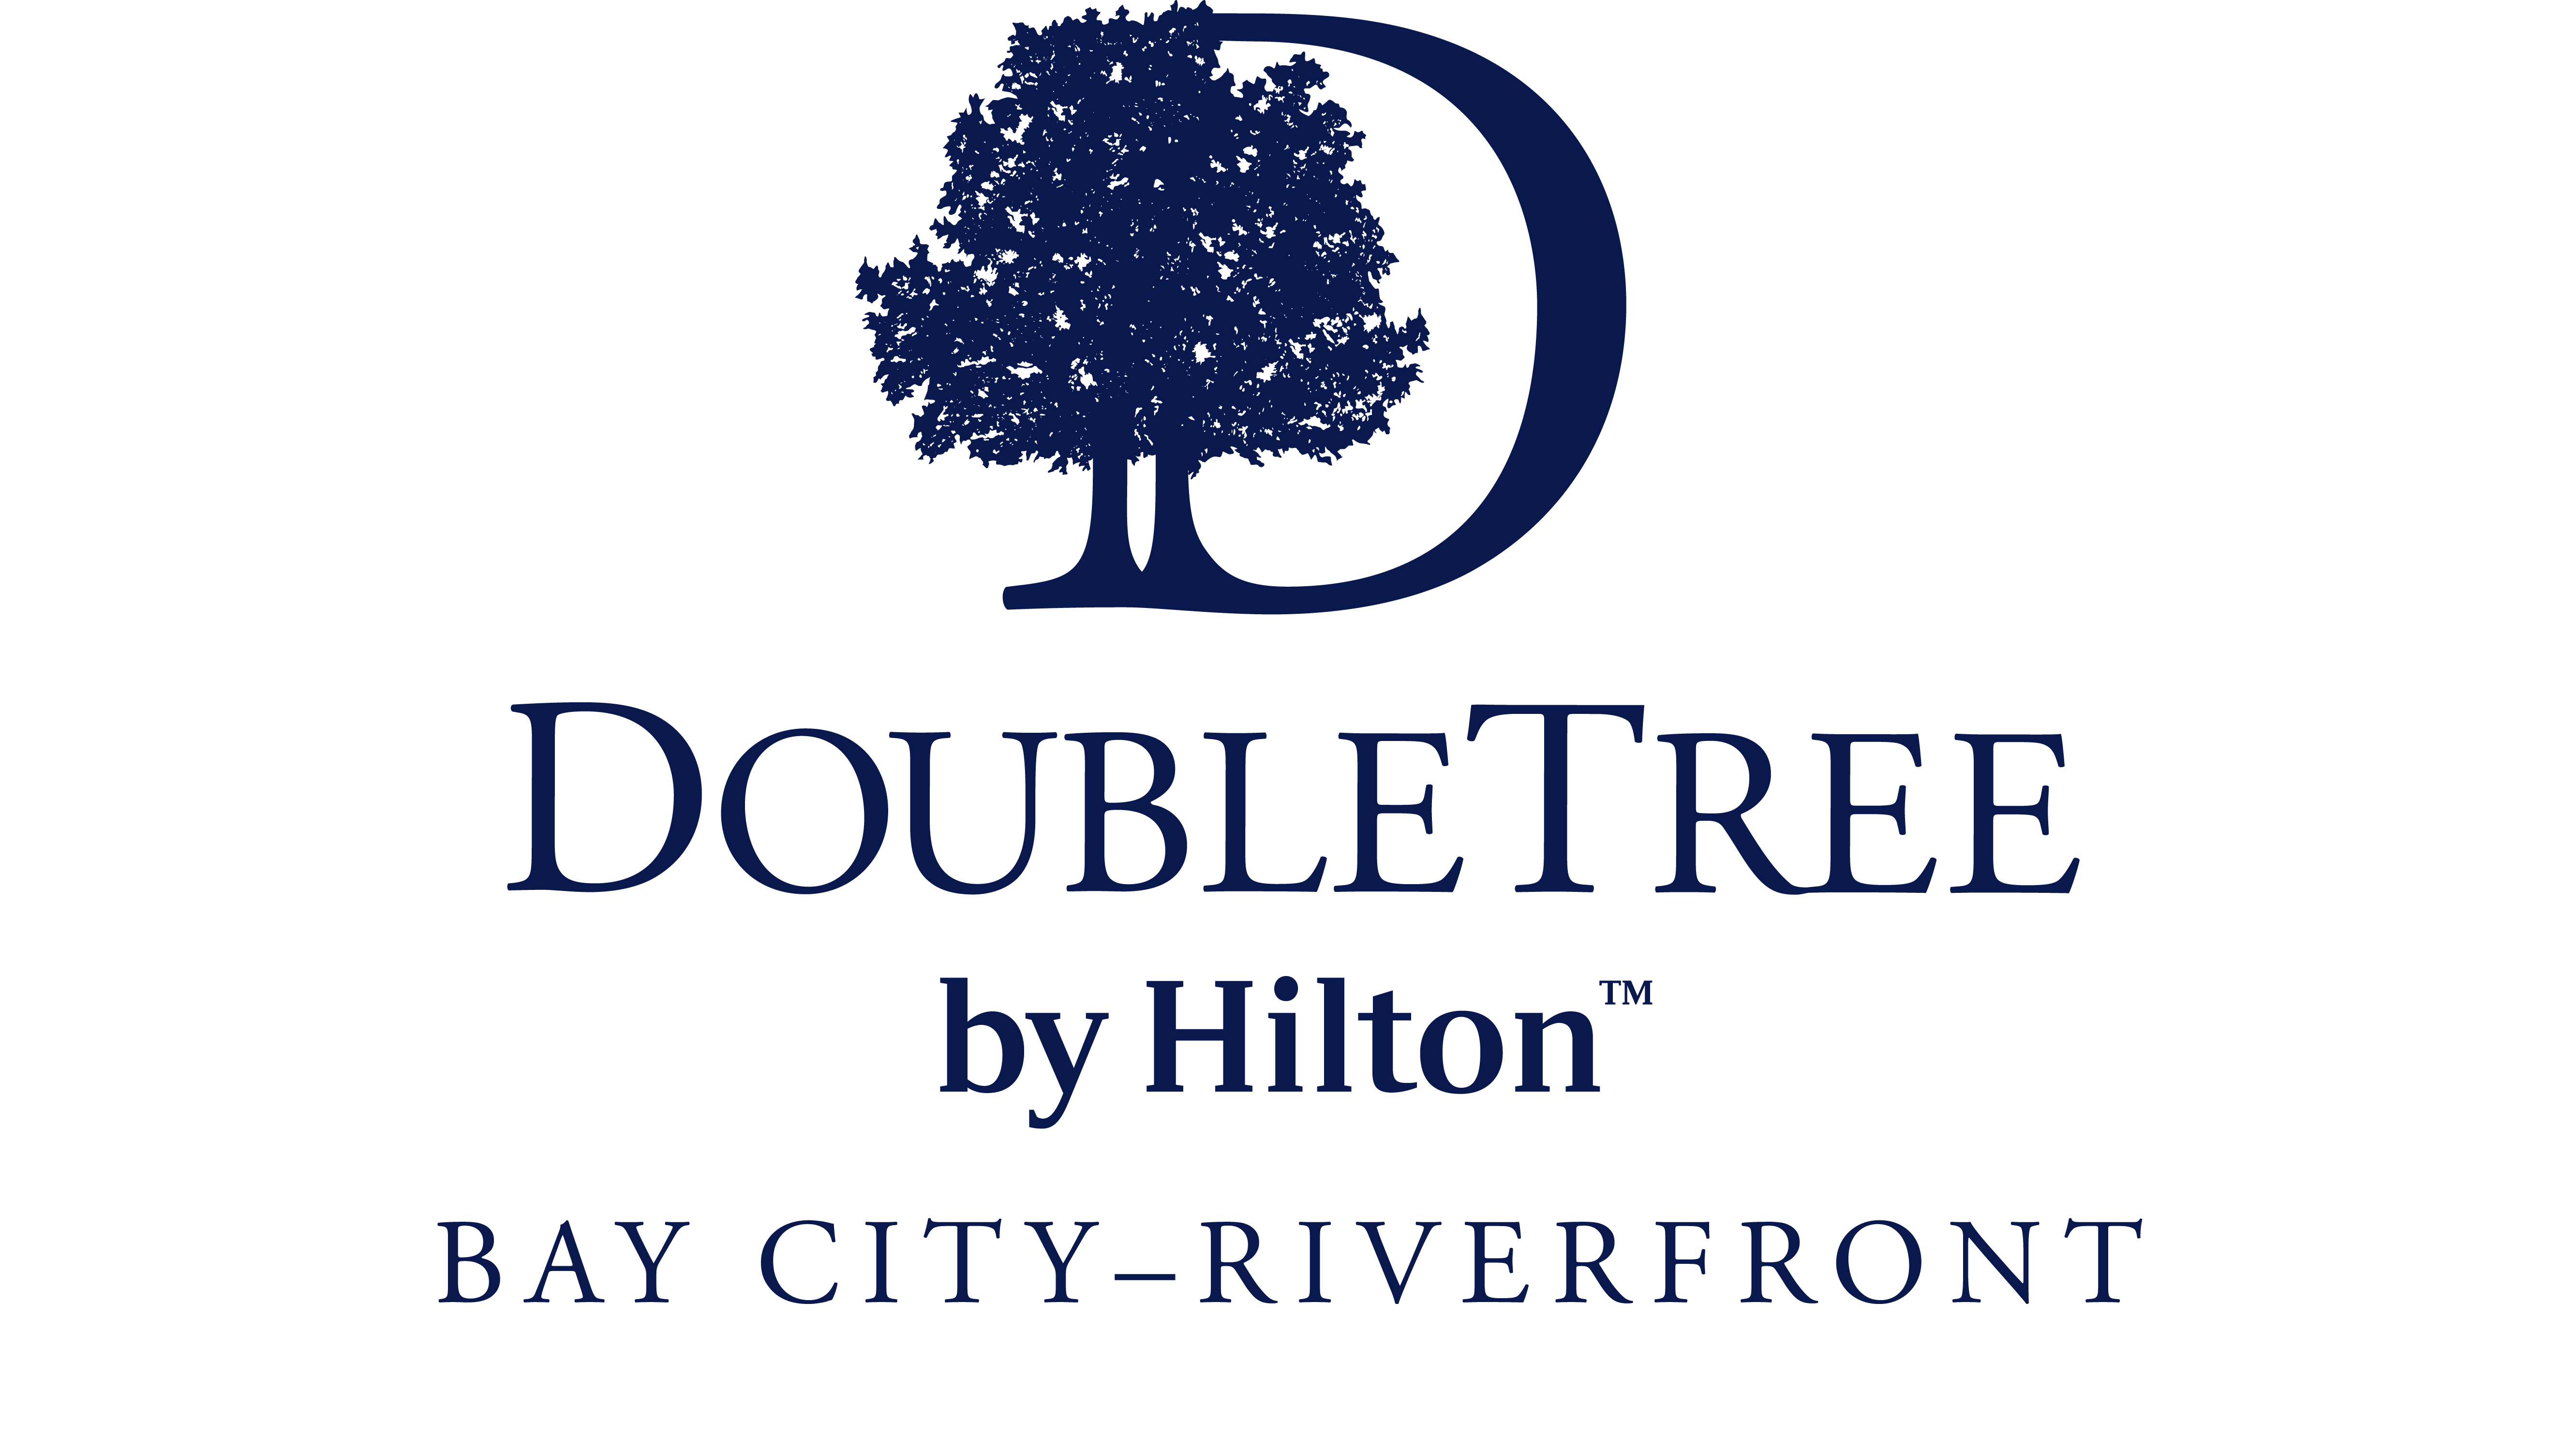 DoubleTree Bay City - Riverfront